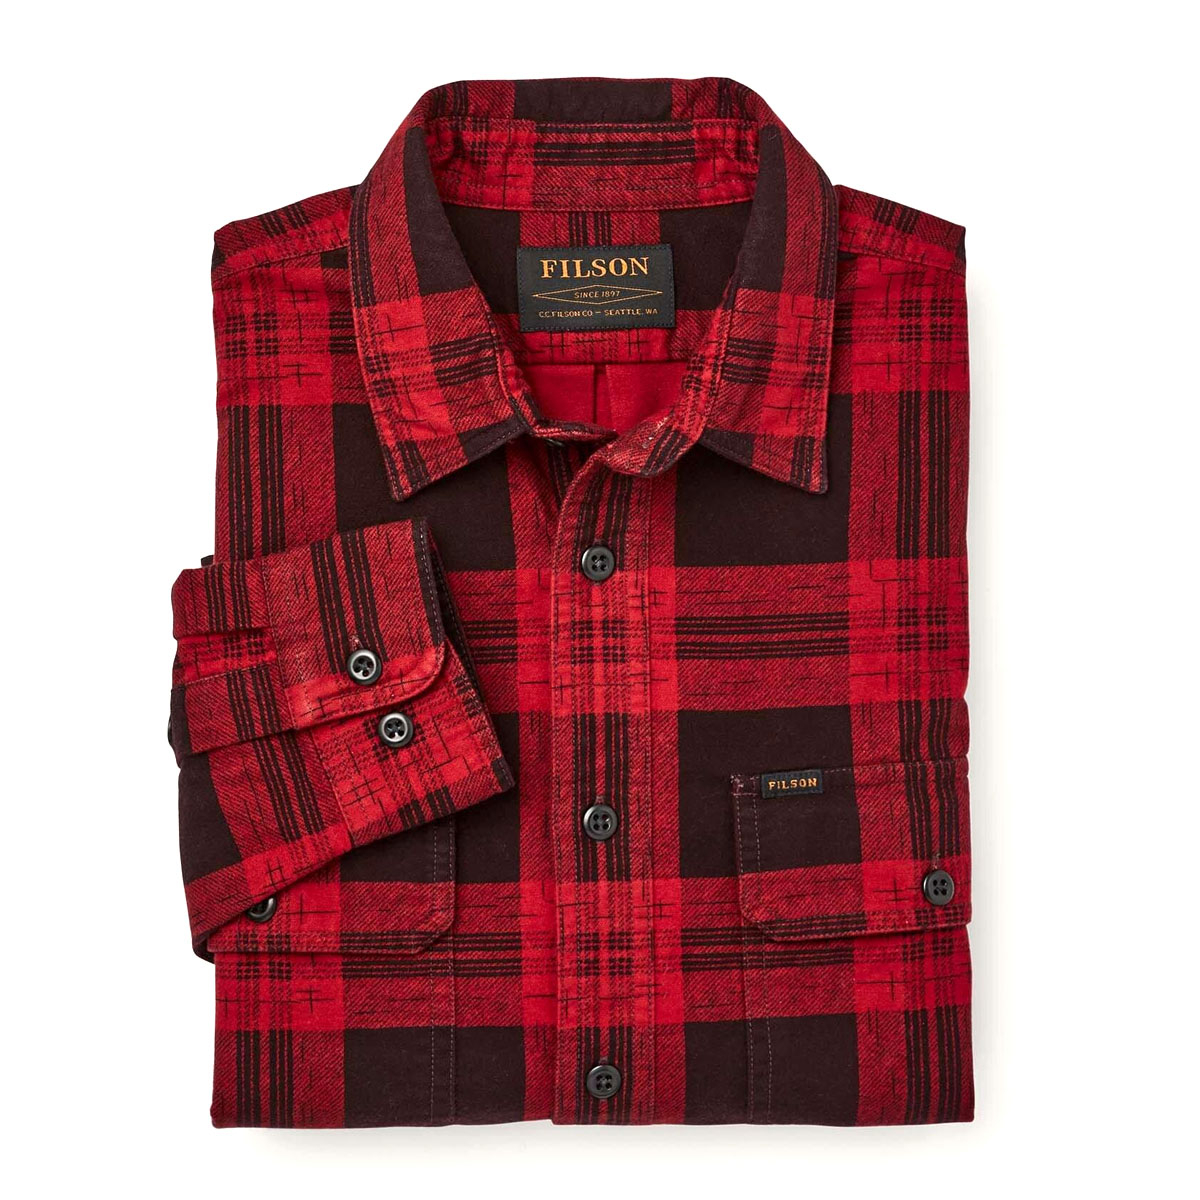 Filson Field Flannel Shirt Red Bark Plaid, Comfortabel en even zacht als sterk